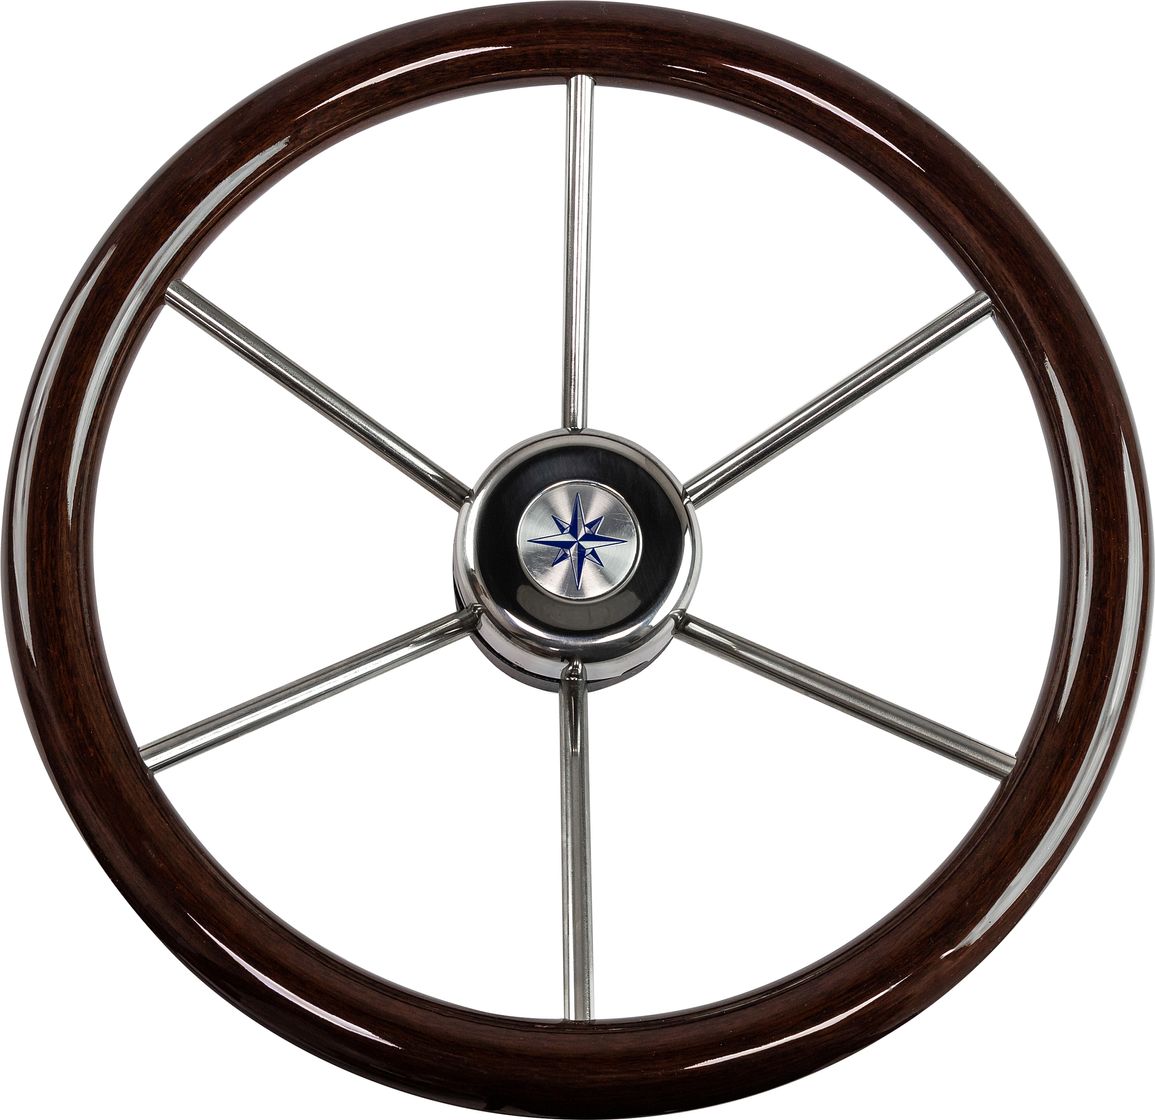 Рулевое колесо LEADER WOOD деревянный обод серебряные спицы д. 390 мм VN7390-33 рулевое колесо leader plast обод серебряные спицы д 330 мм vn8330 01